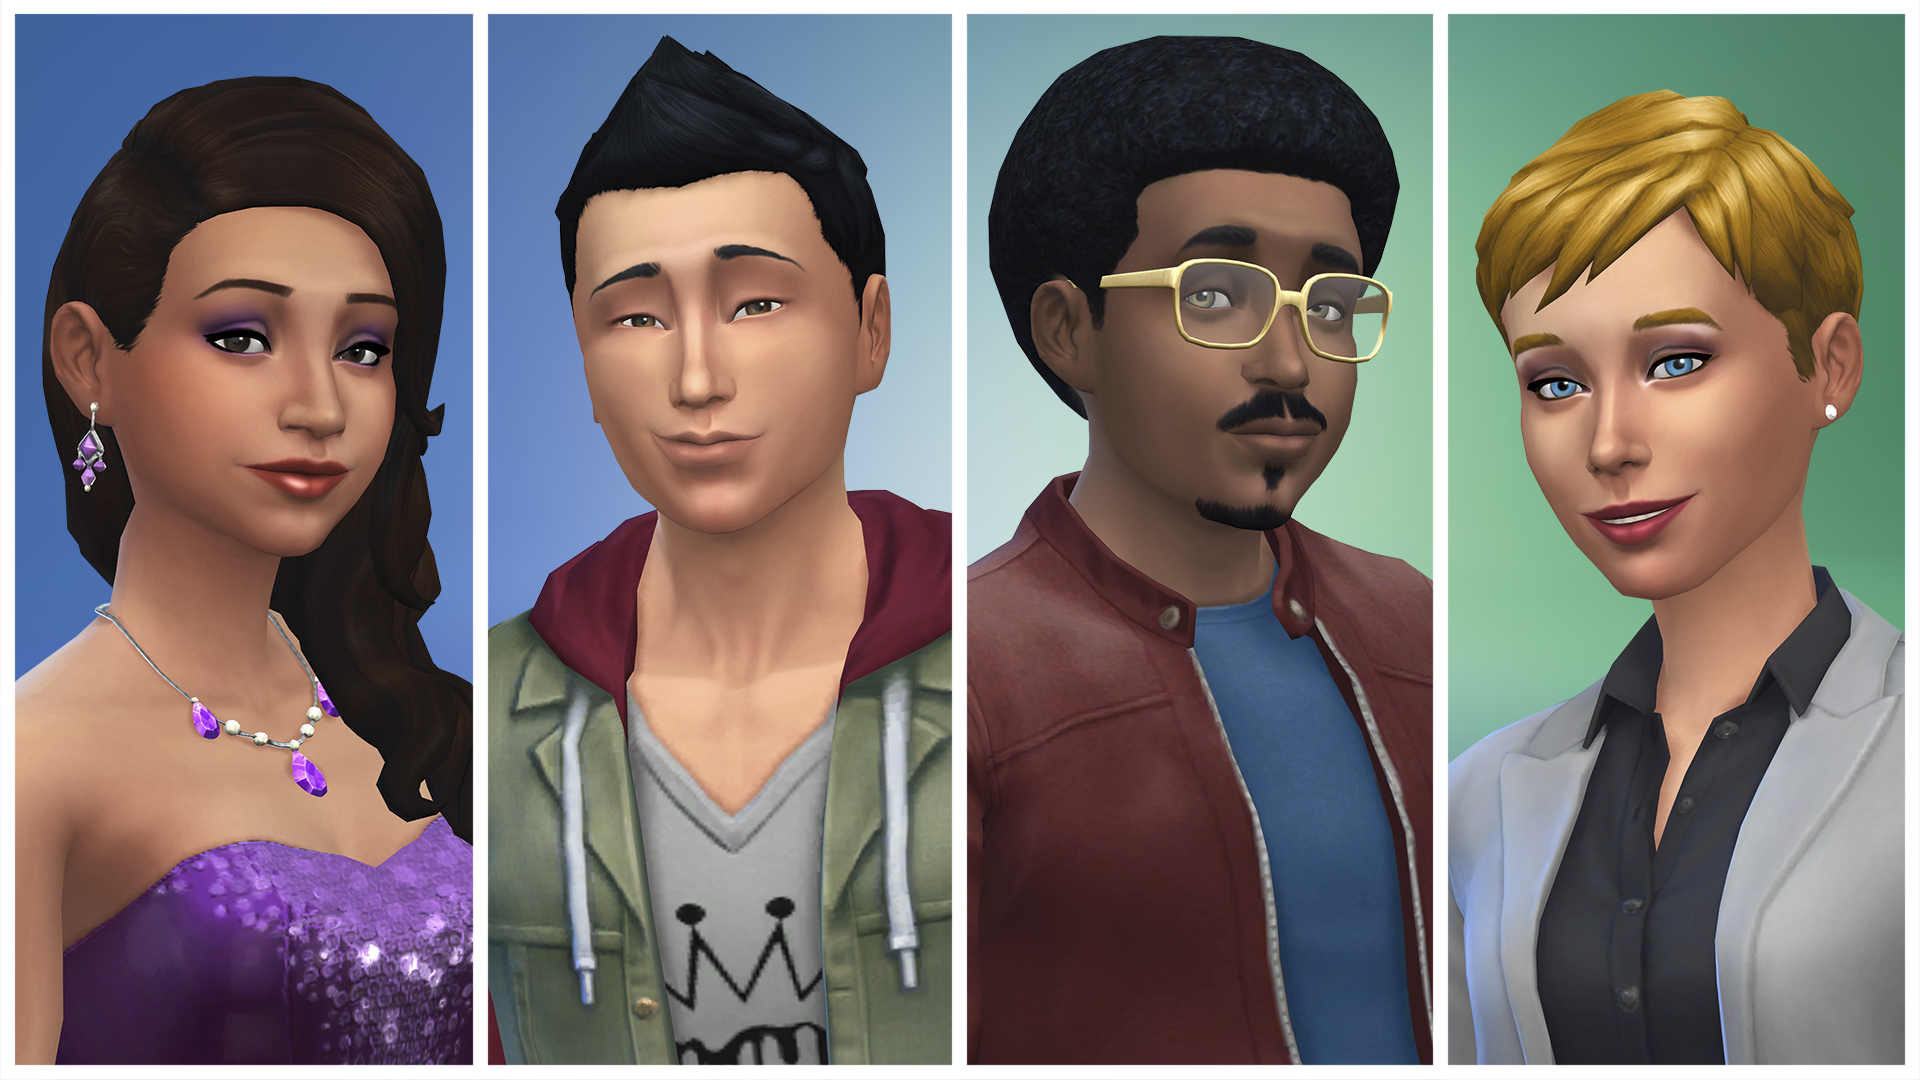 De Sims 4 - screenshot